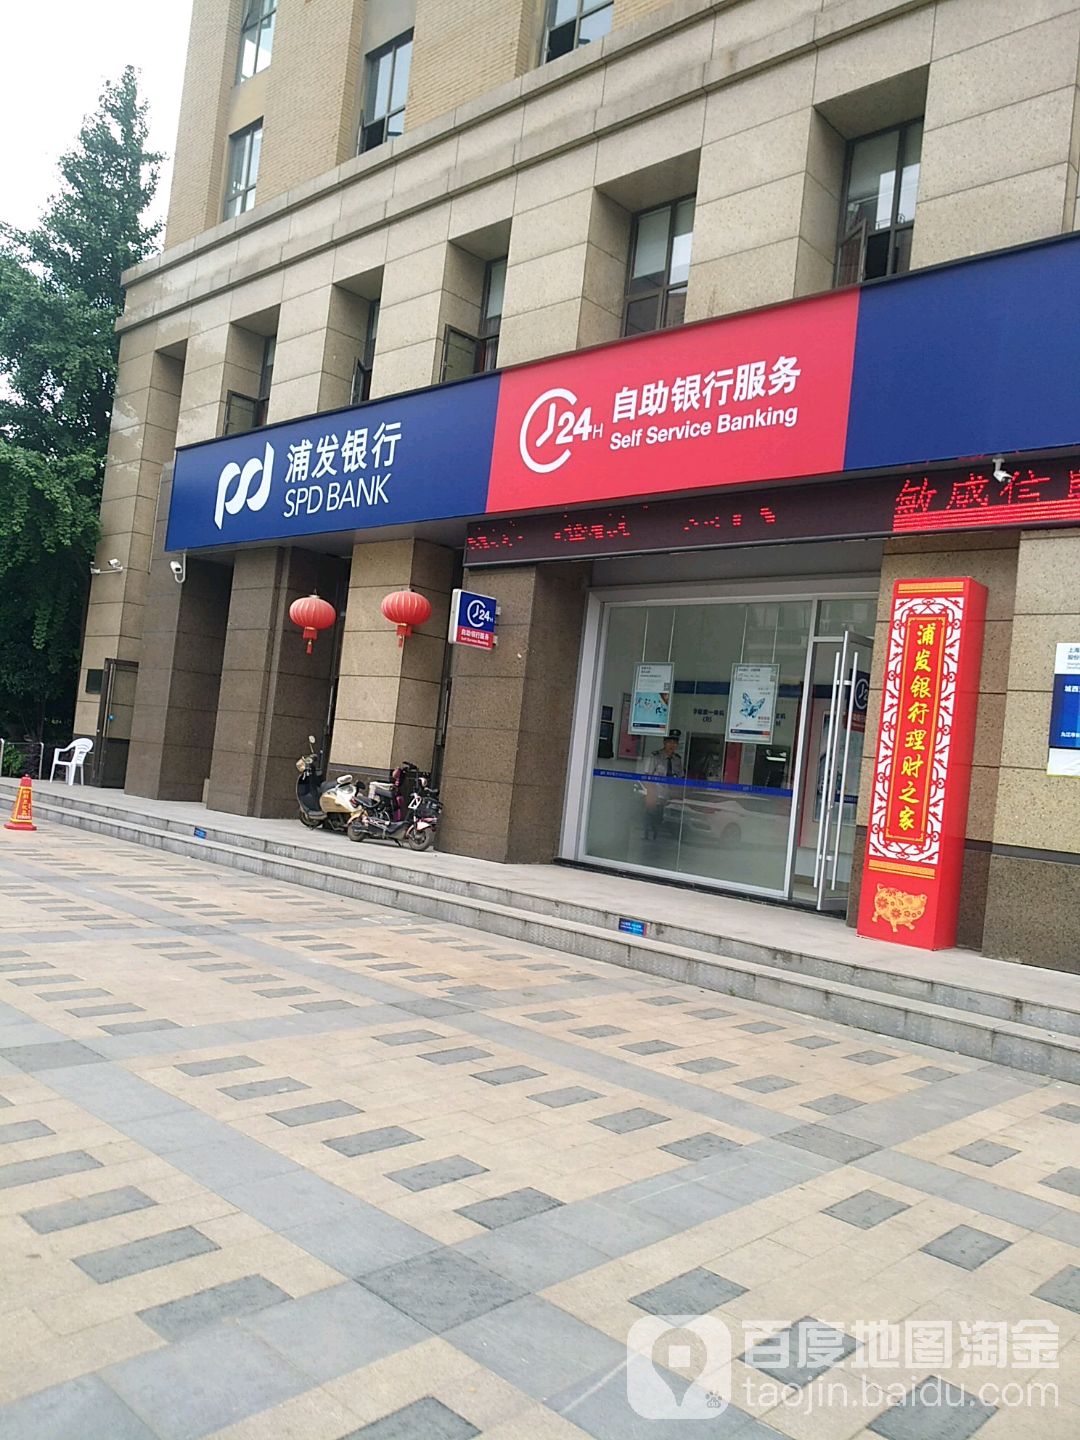 上海浦东发展银行24小时自助银行(九江城西支行)